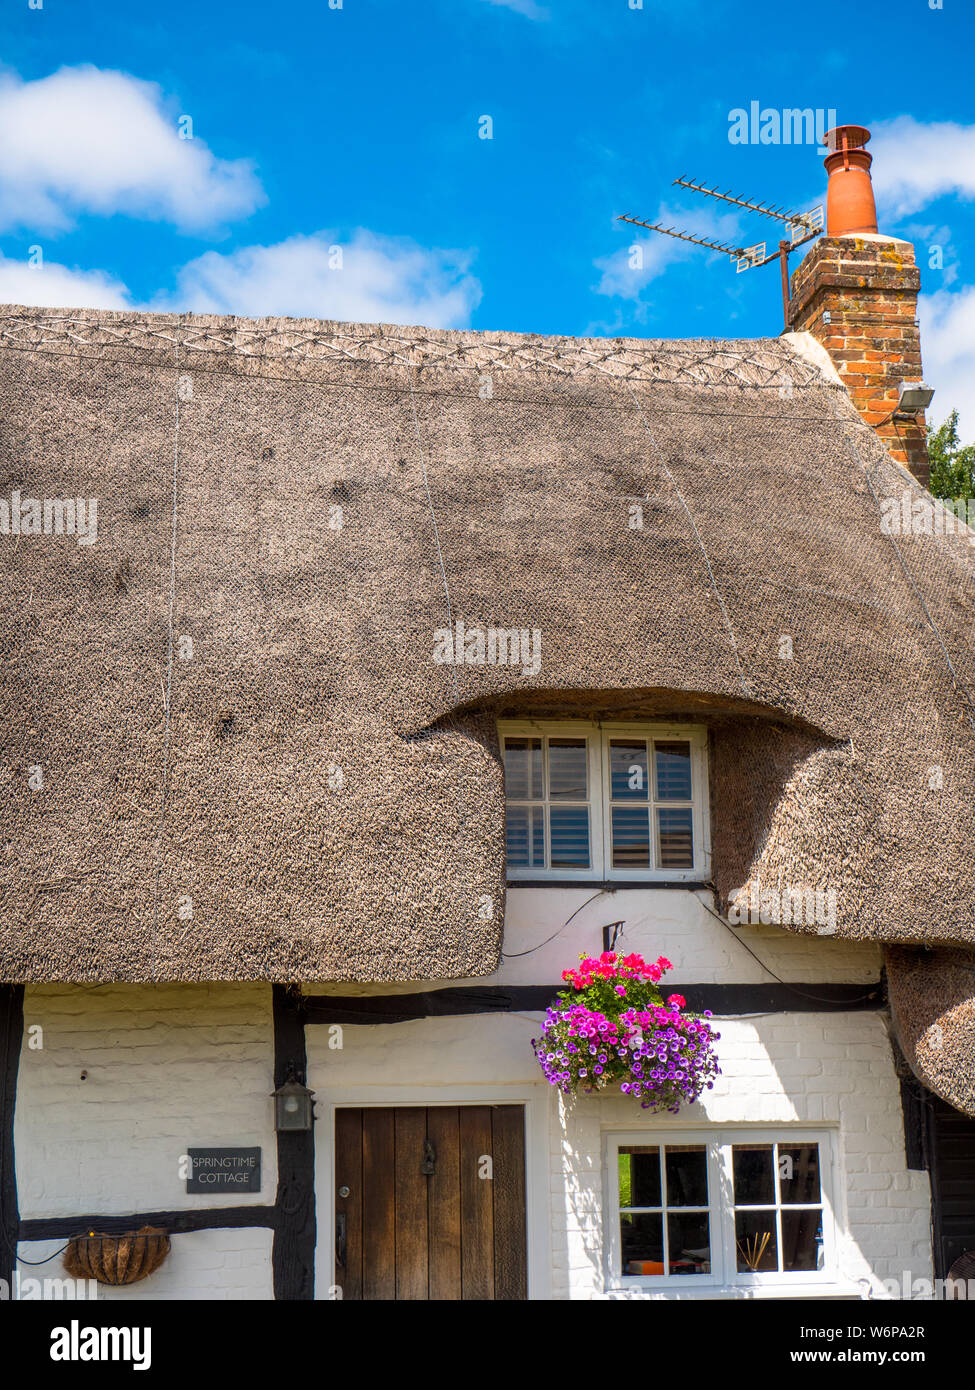 Casita con techo de paja, idilio rural, colinas de Chiltern, Aldworth, Berkshire, Inglaterra, Reino Unido, GB. Foto de stock